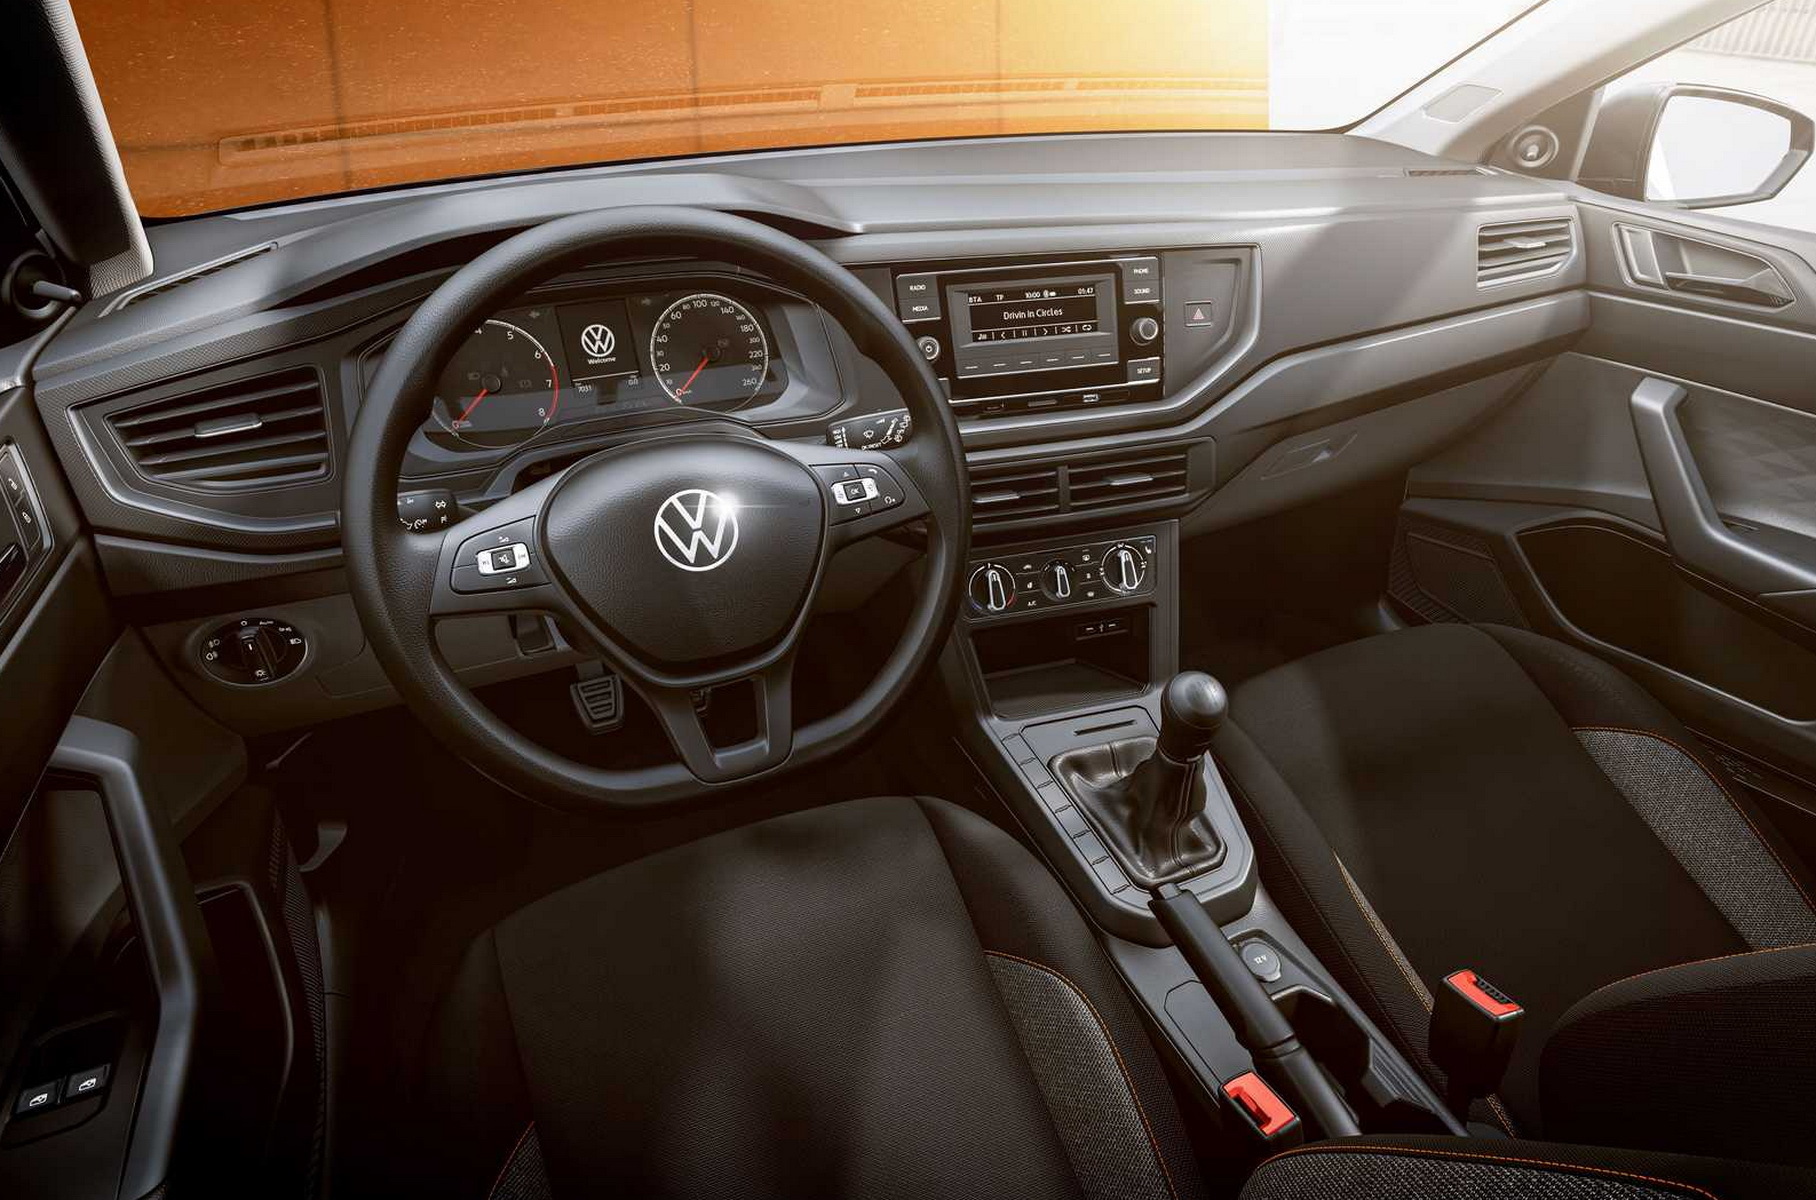 Volkswagen официально представил новый бюджетный хэтчбек Polo track.